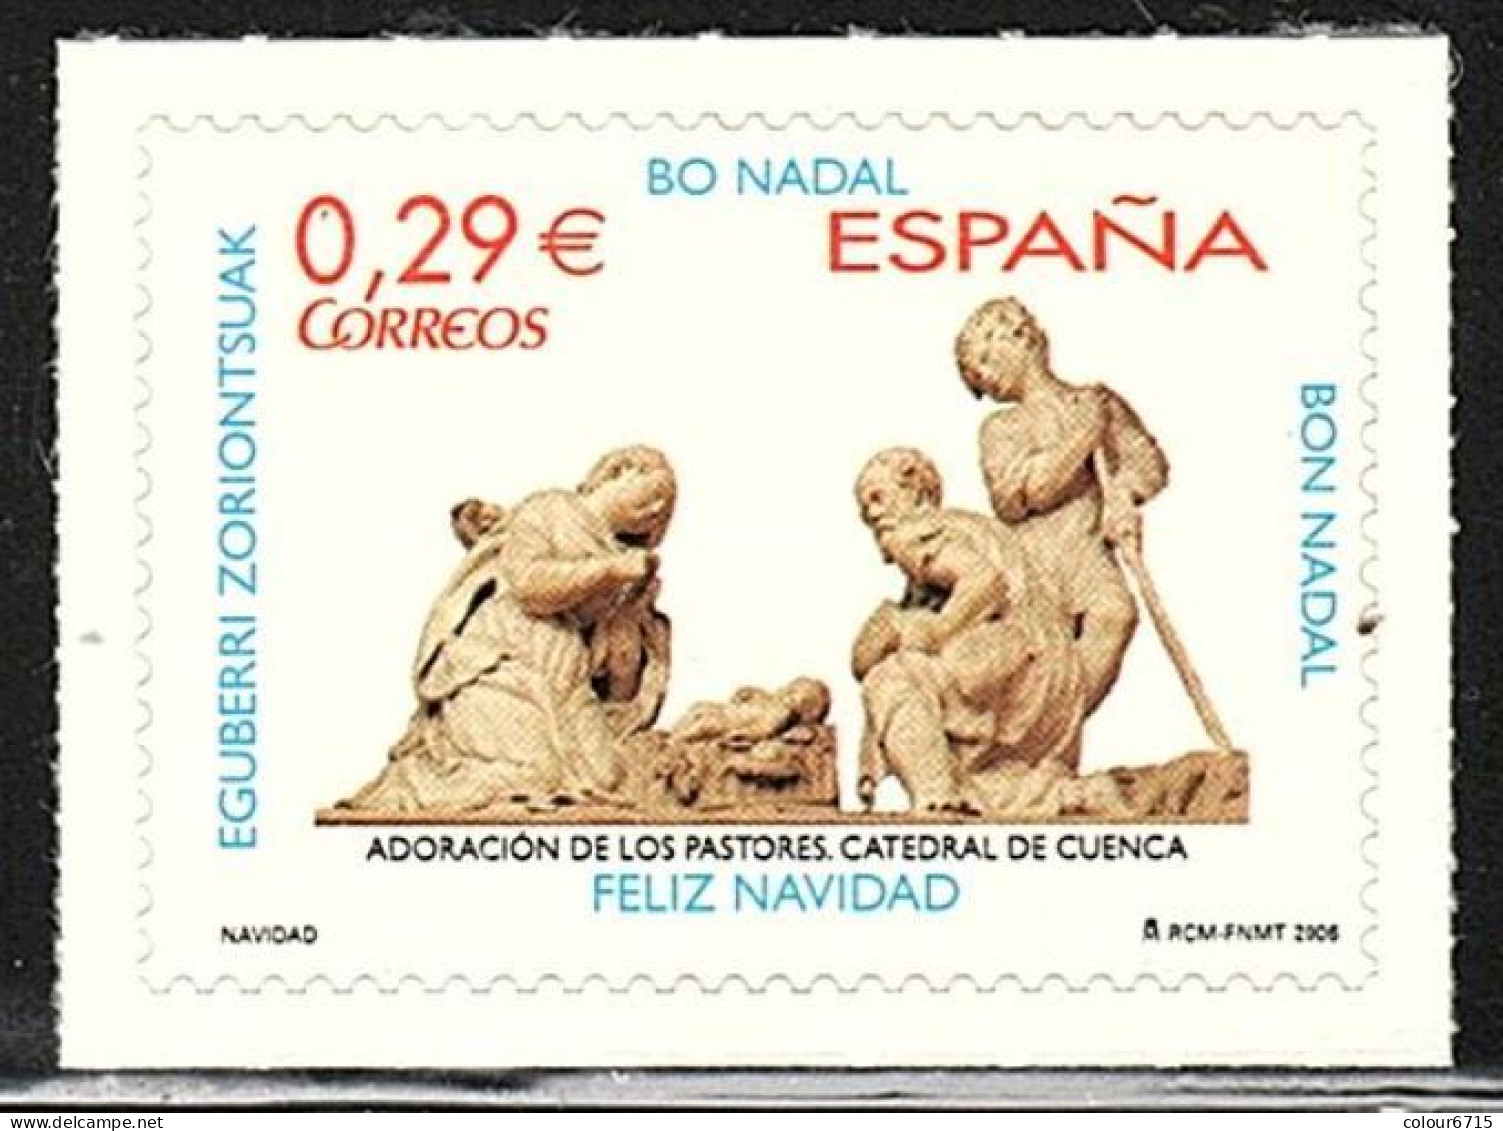 Spain 2006 Navidad Christmas Adoracion De Los Pastores Catedral De Cuenca Stamp 1v MNH - Nuovi